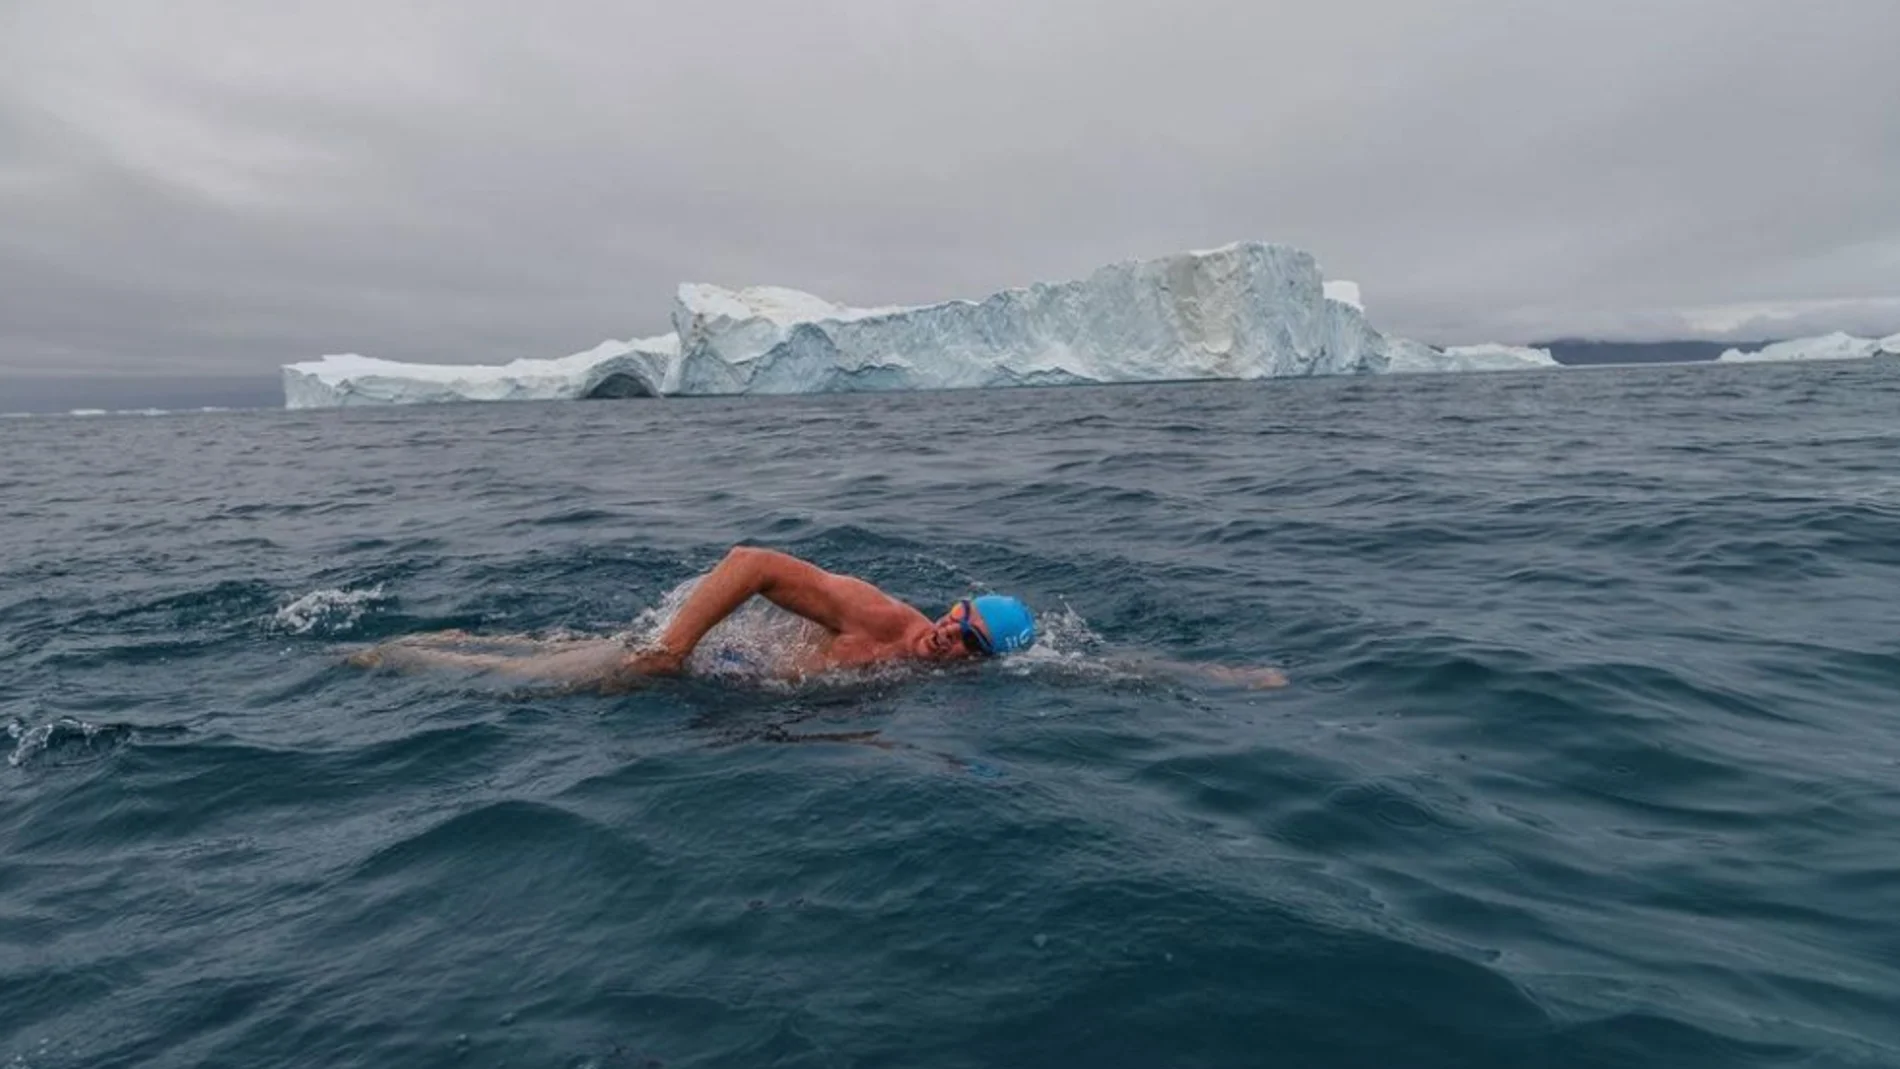 Lewis Pugh nada en "las aguas más frías de la Tierra" para concienciar contra el cambio climático